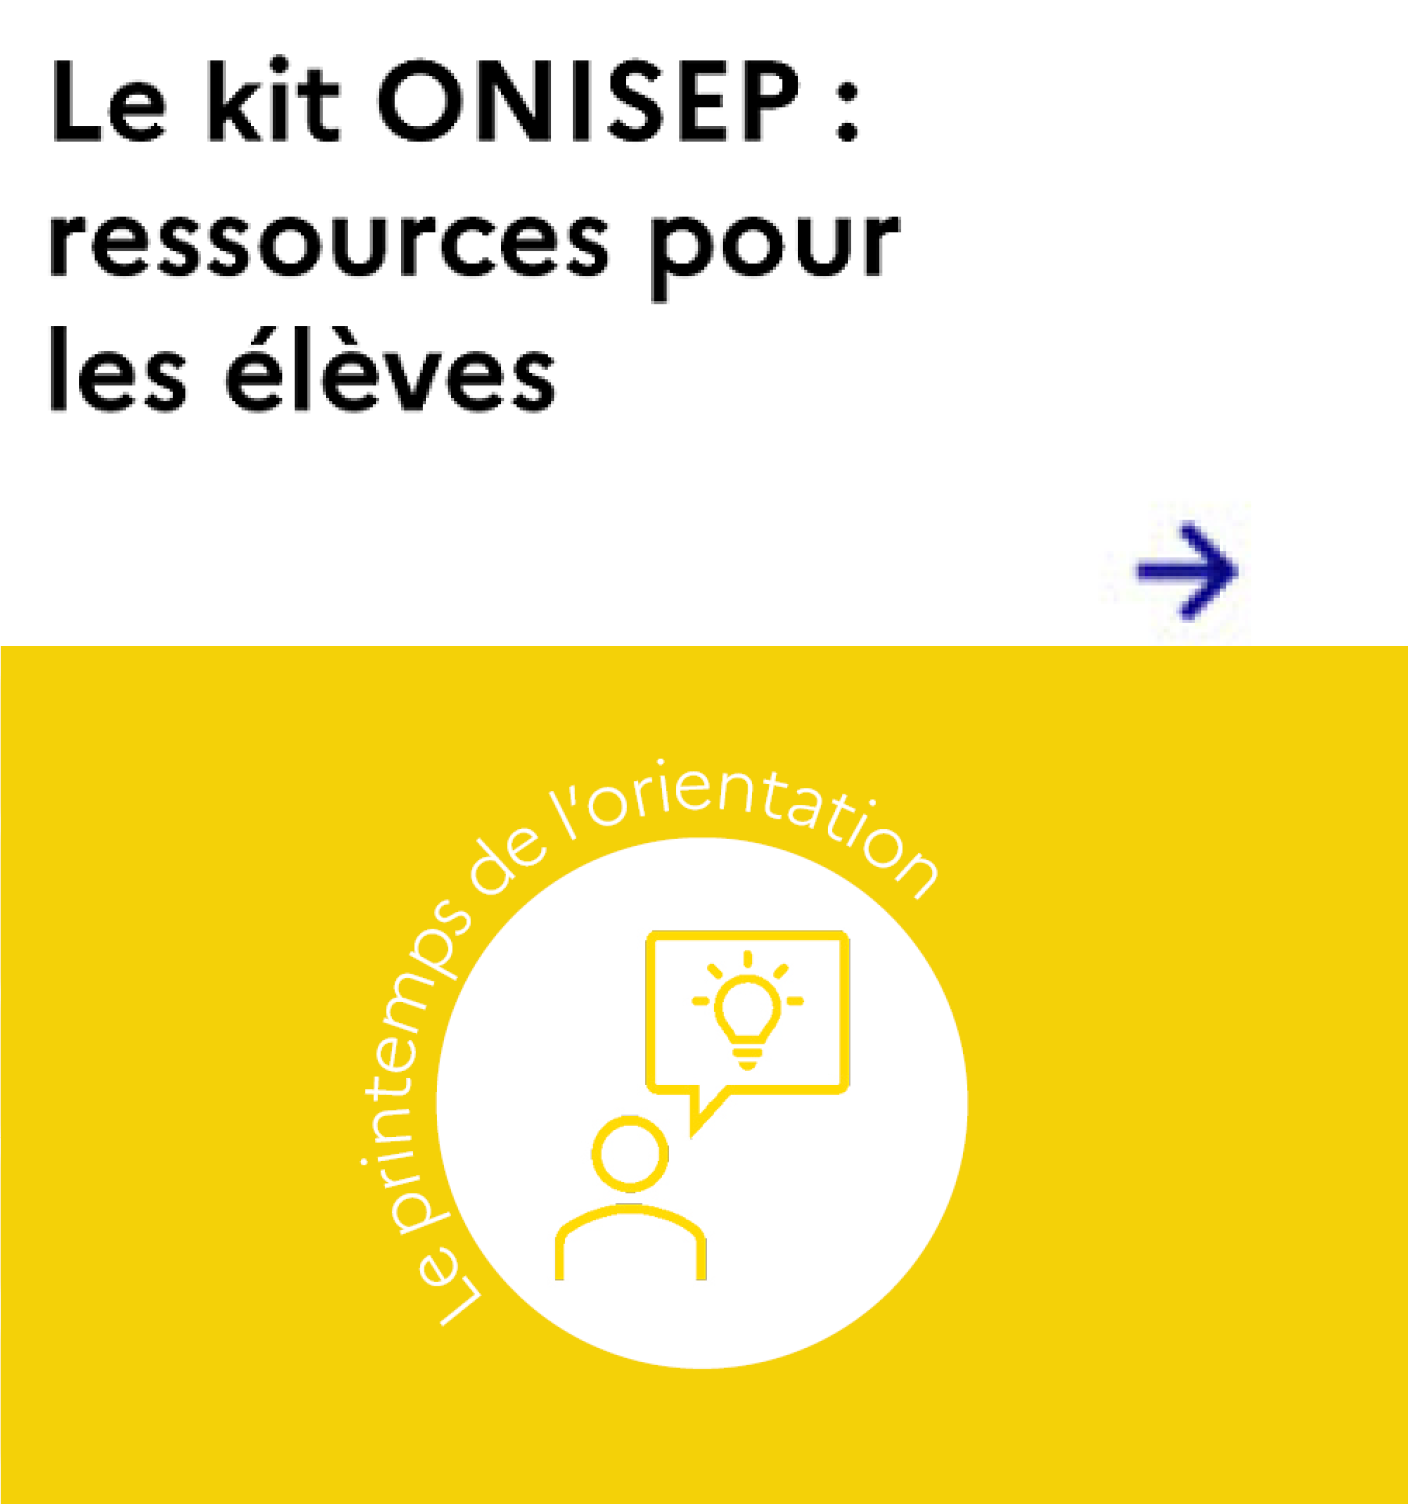 Le kit Onisep : ressources pour les élèves